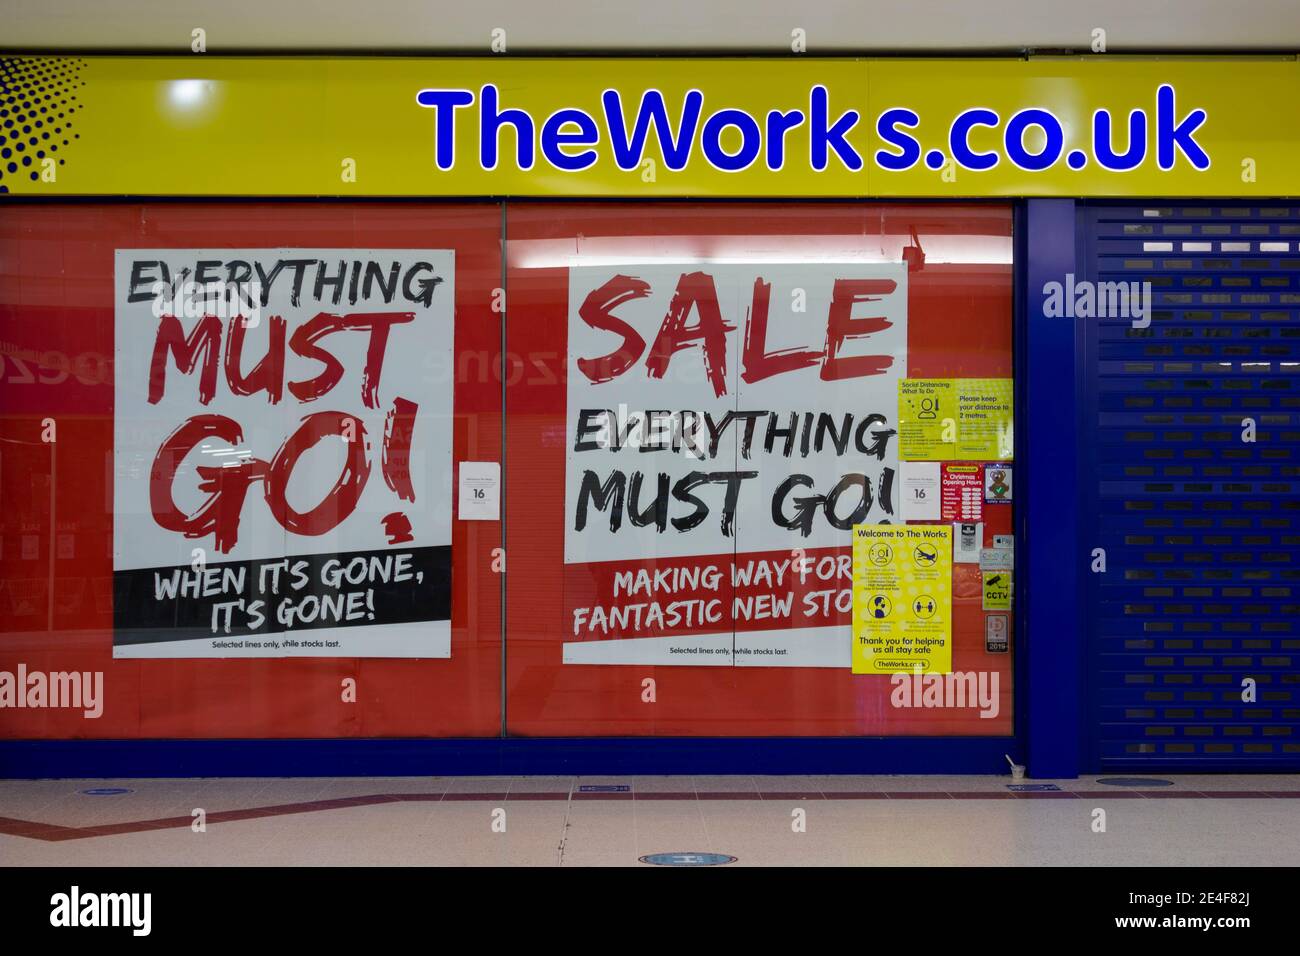 Tout doit être mis en vente affiche sur la fenêtre du magasin de la works.co.uk Banque D'Images